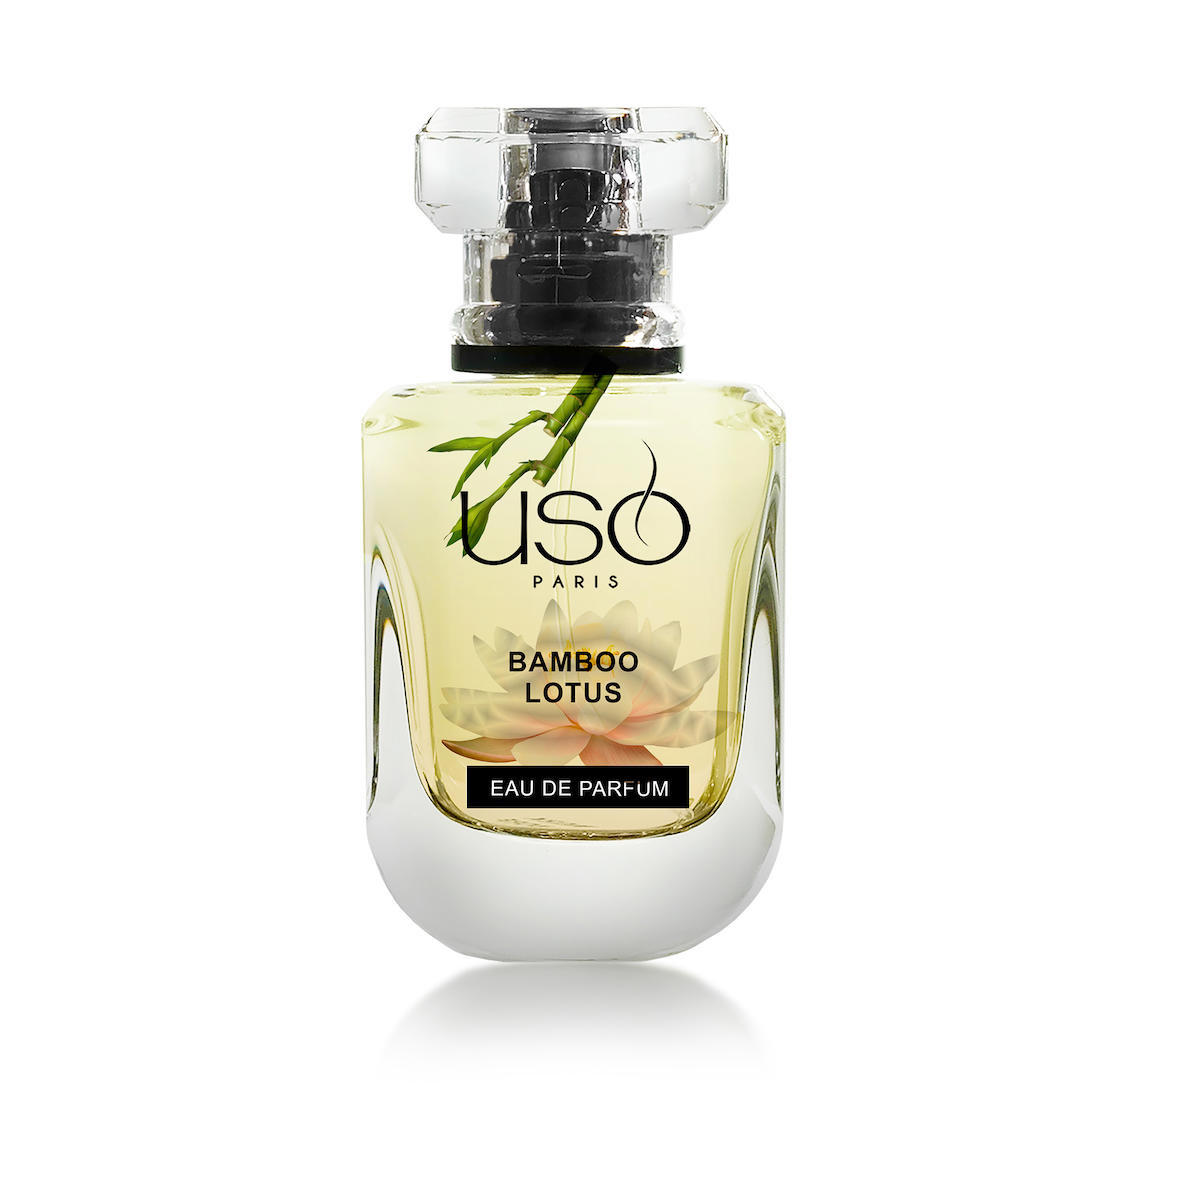 Üso Bamboo & Lotus EDP Kadın Parfüm 50 ml